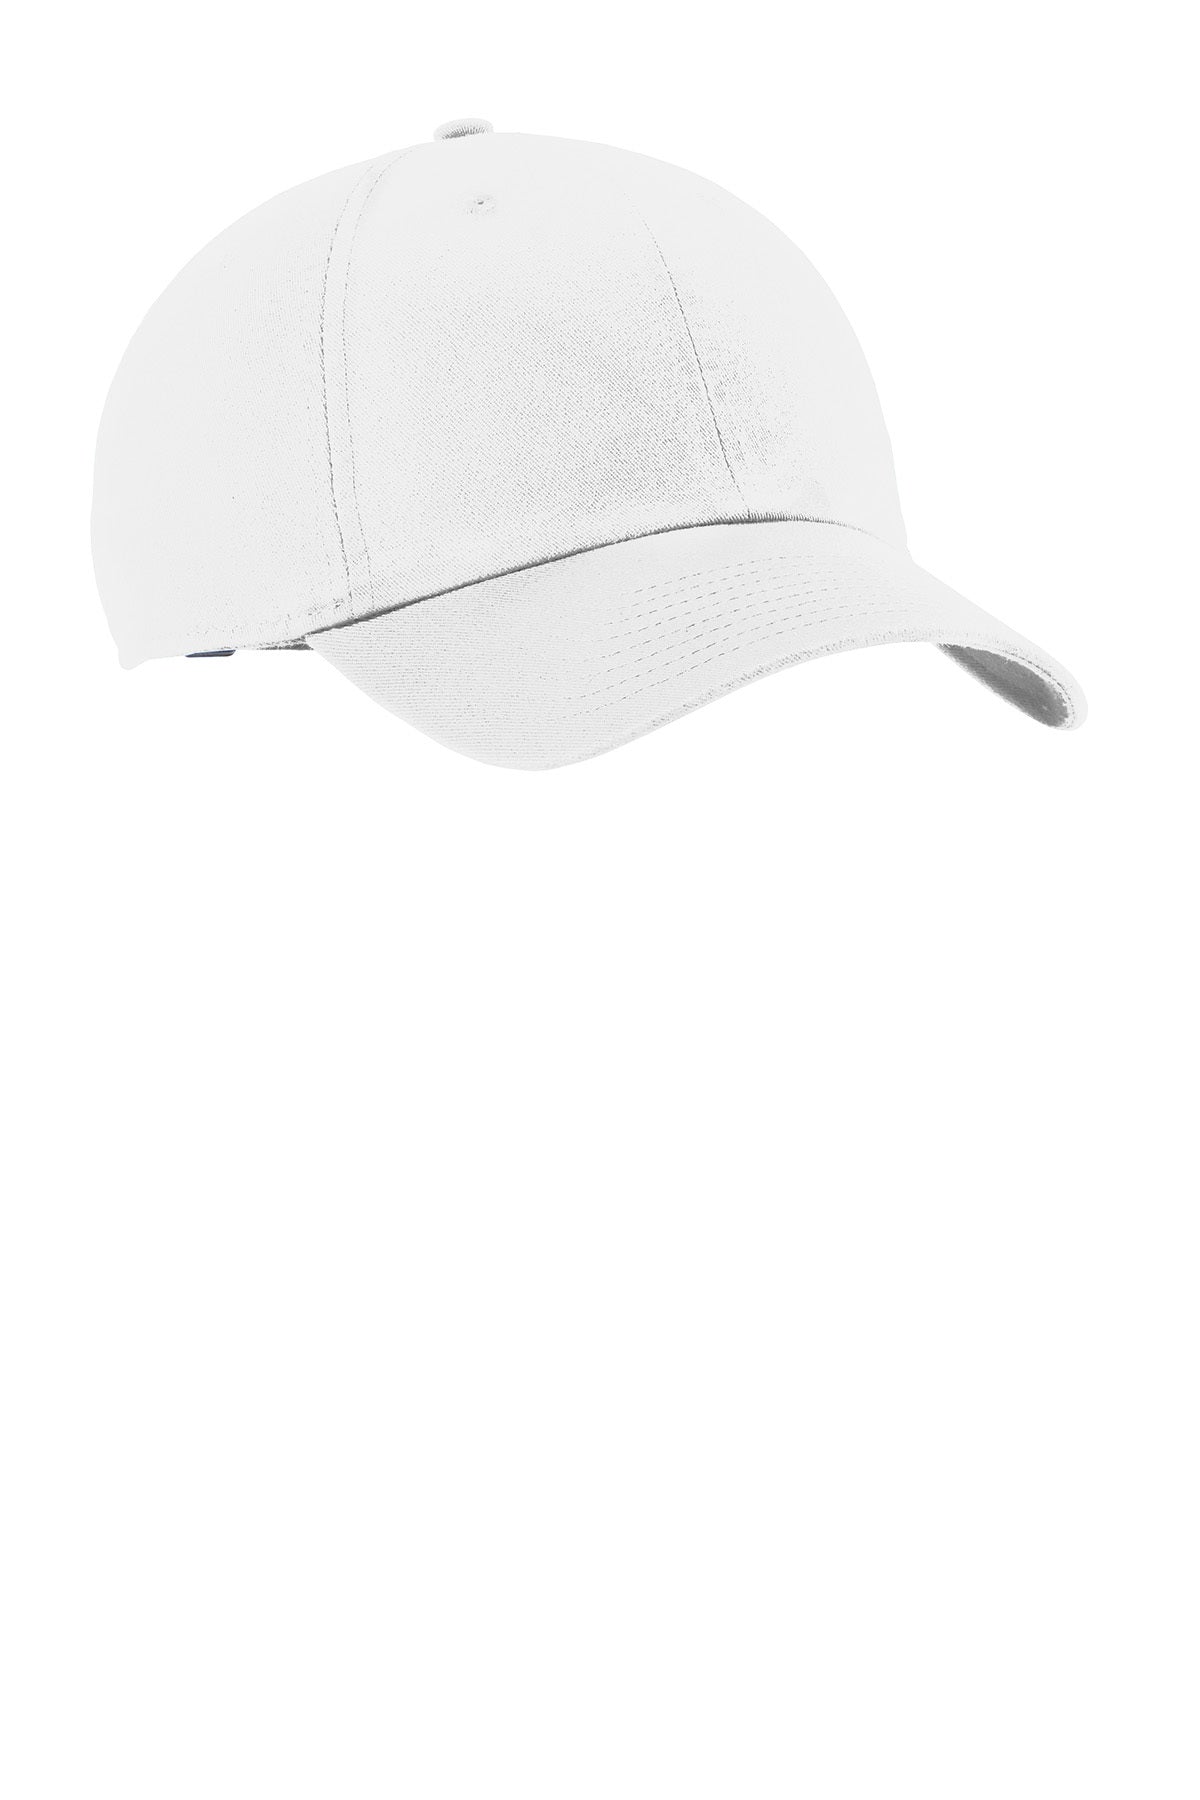 Nike Heritage 86 Customized Caps, White